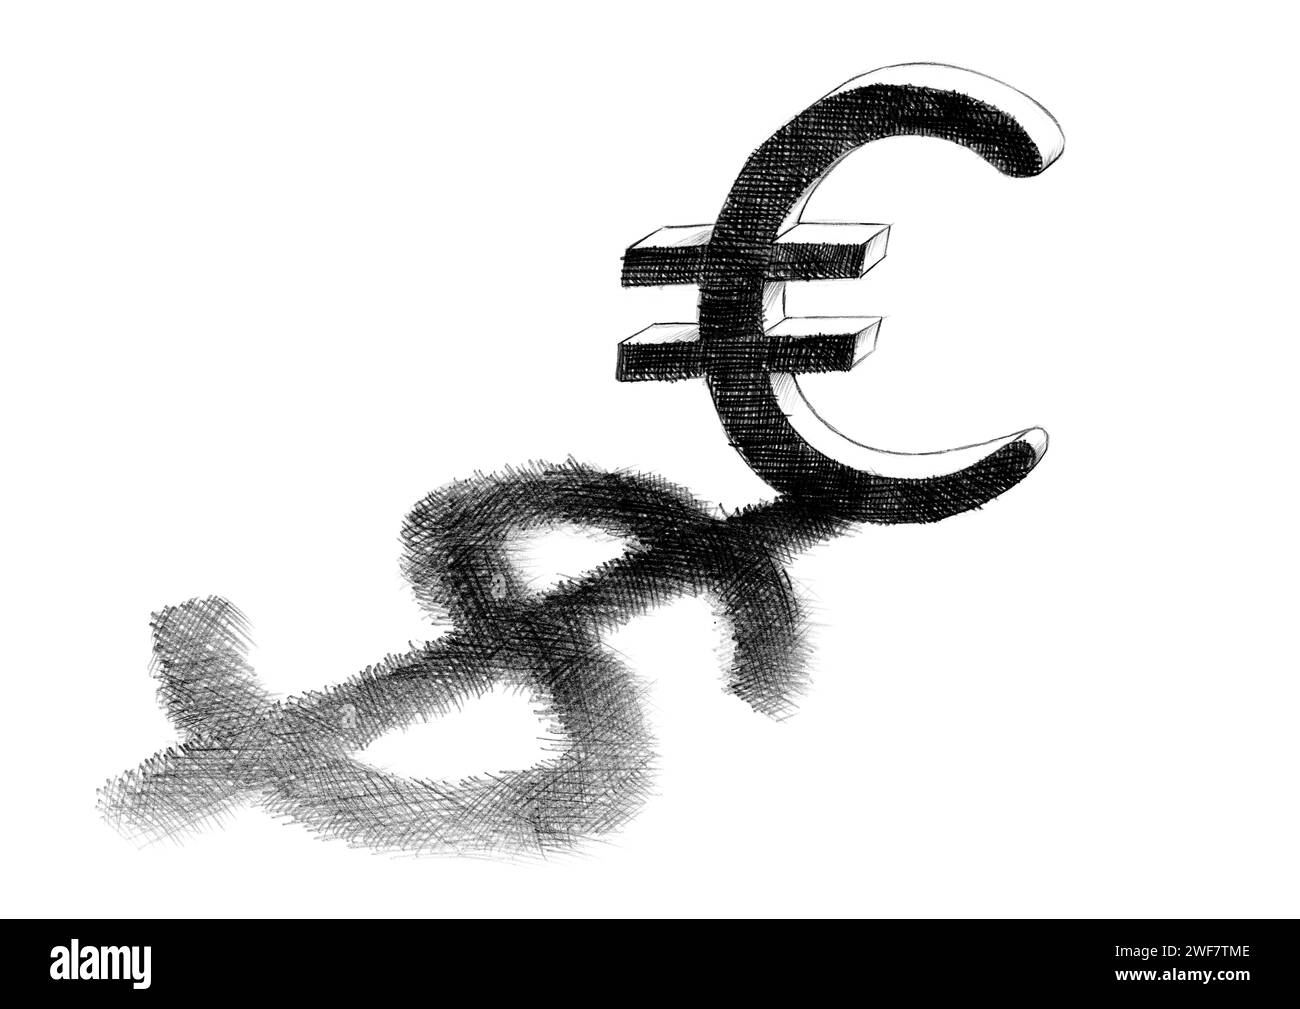 Dibujo a mano alzada a lápiz incubado en el papel de un signo de euro que proyecta una sombra de dólar. Concepto de negocio y finanzas para la relación entre curren europeo Foto de stock